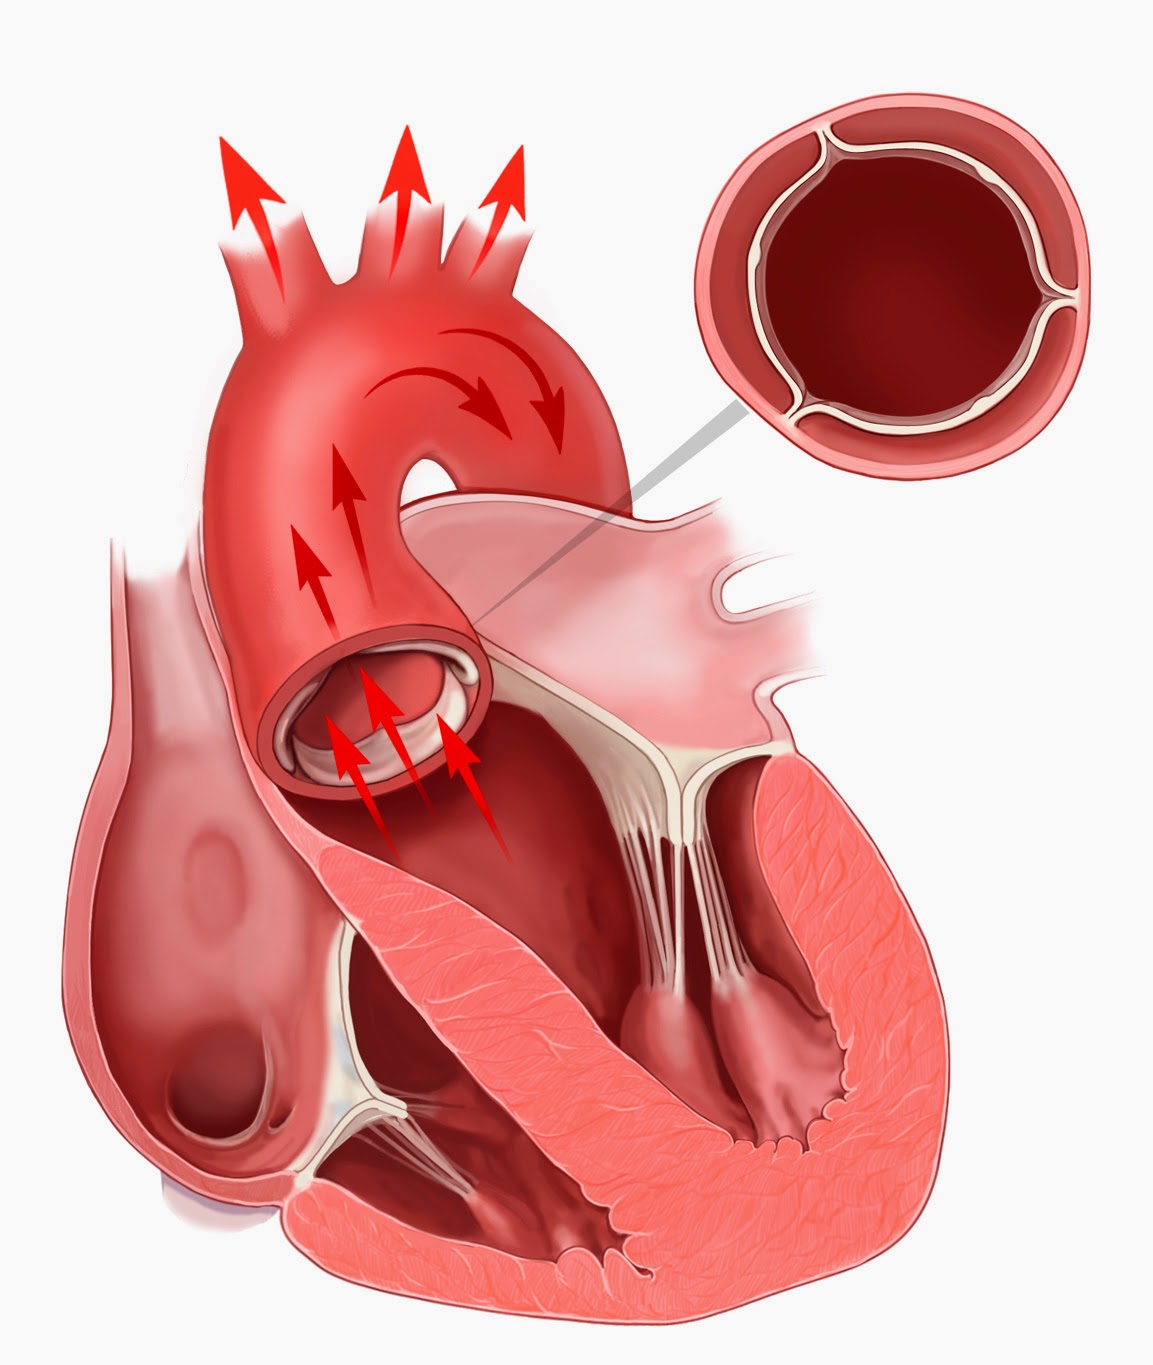 Митральный аортальный стеноз. Метоальгыц аортальный клапаны. Стеноз митрального и аортального клапана. Порок сердца стеноз аортального клапана. Митральный и аортальный клапан.